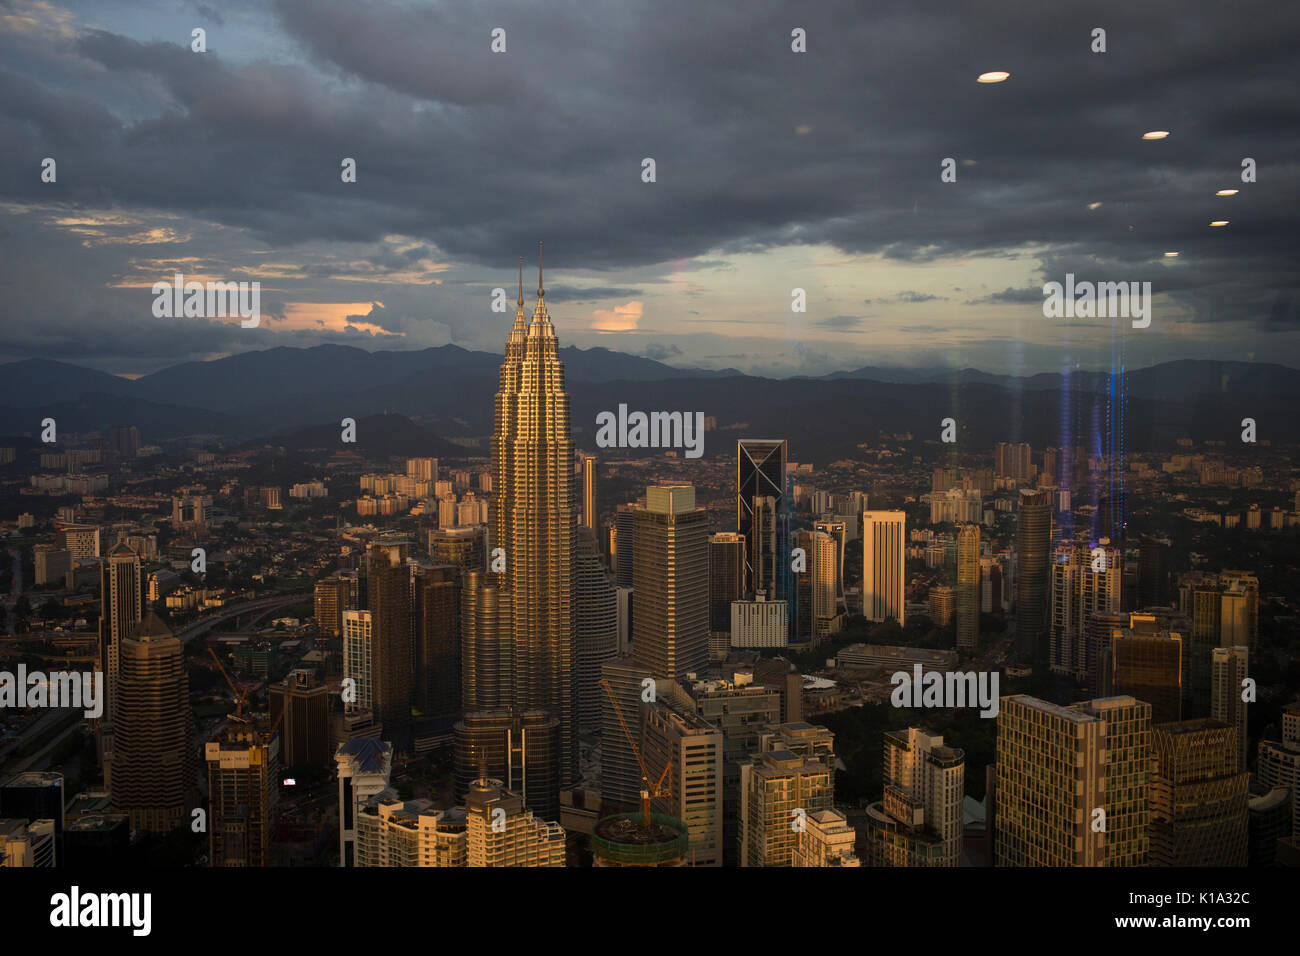 L'horizon moderne de la ville capitale, Kuala Lumpur. Les Tours Petronas sont également visibles. Banque D'Images